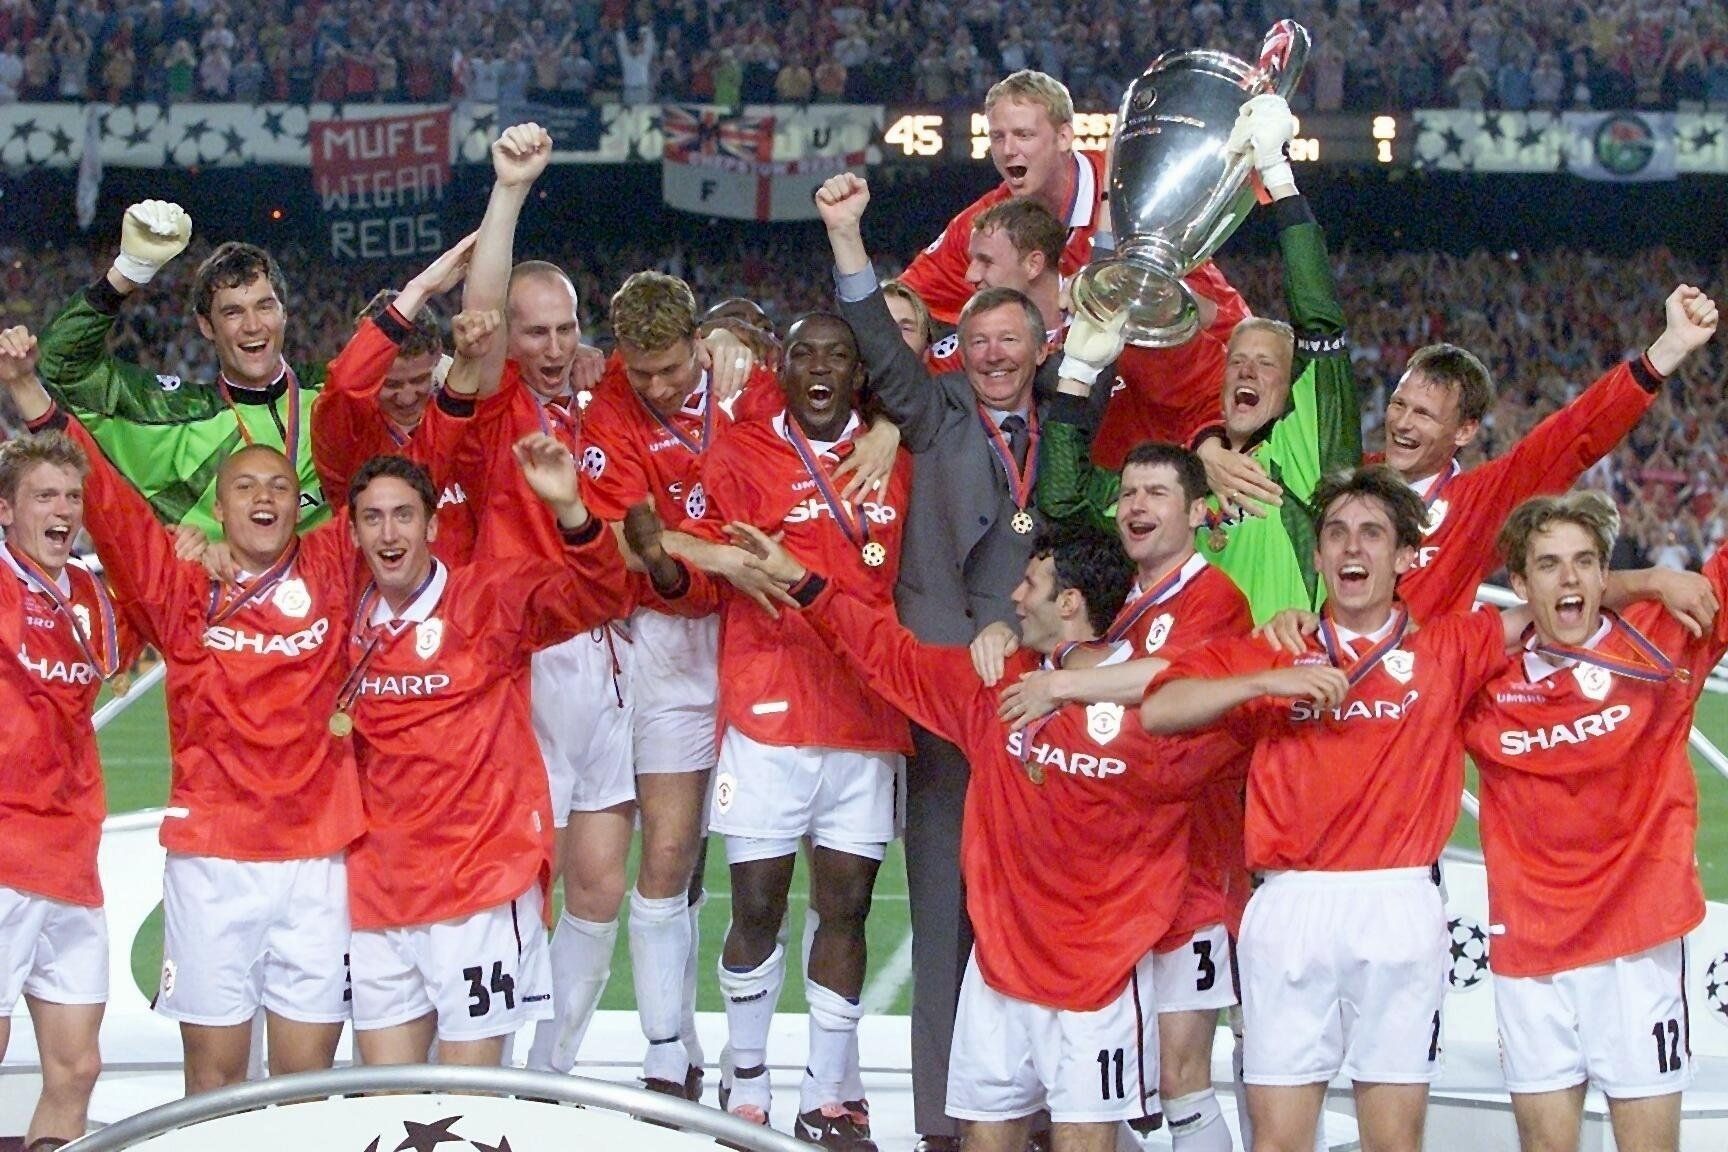 Fotbalisté Manchesteru United se radují z vítězství ve finále Ligy mistrů 1999 proti Bayern Mnichov v Barceloně.